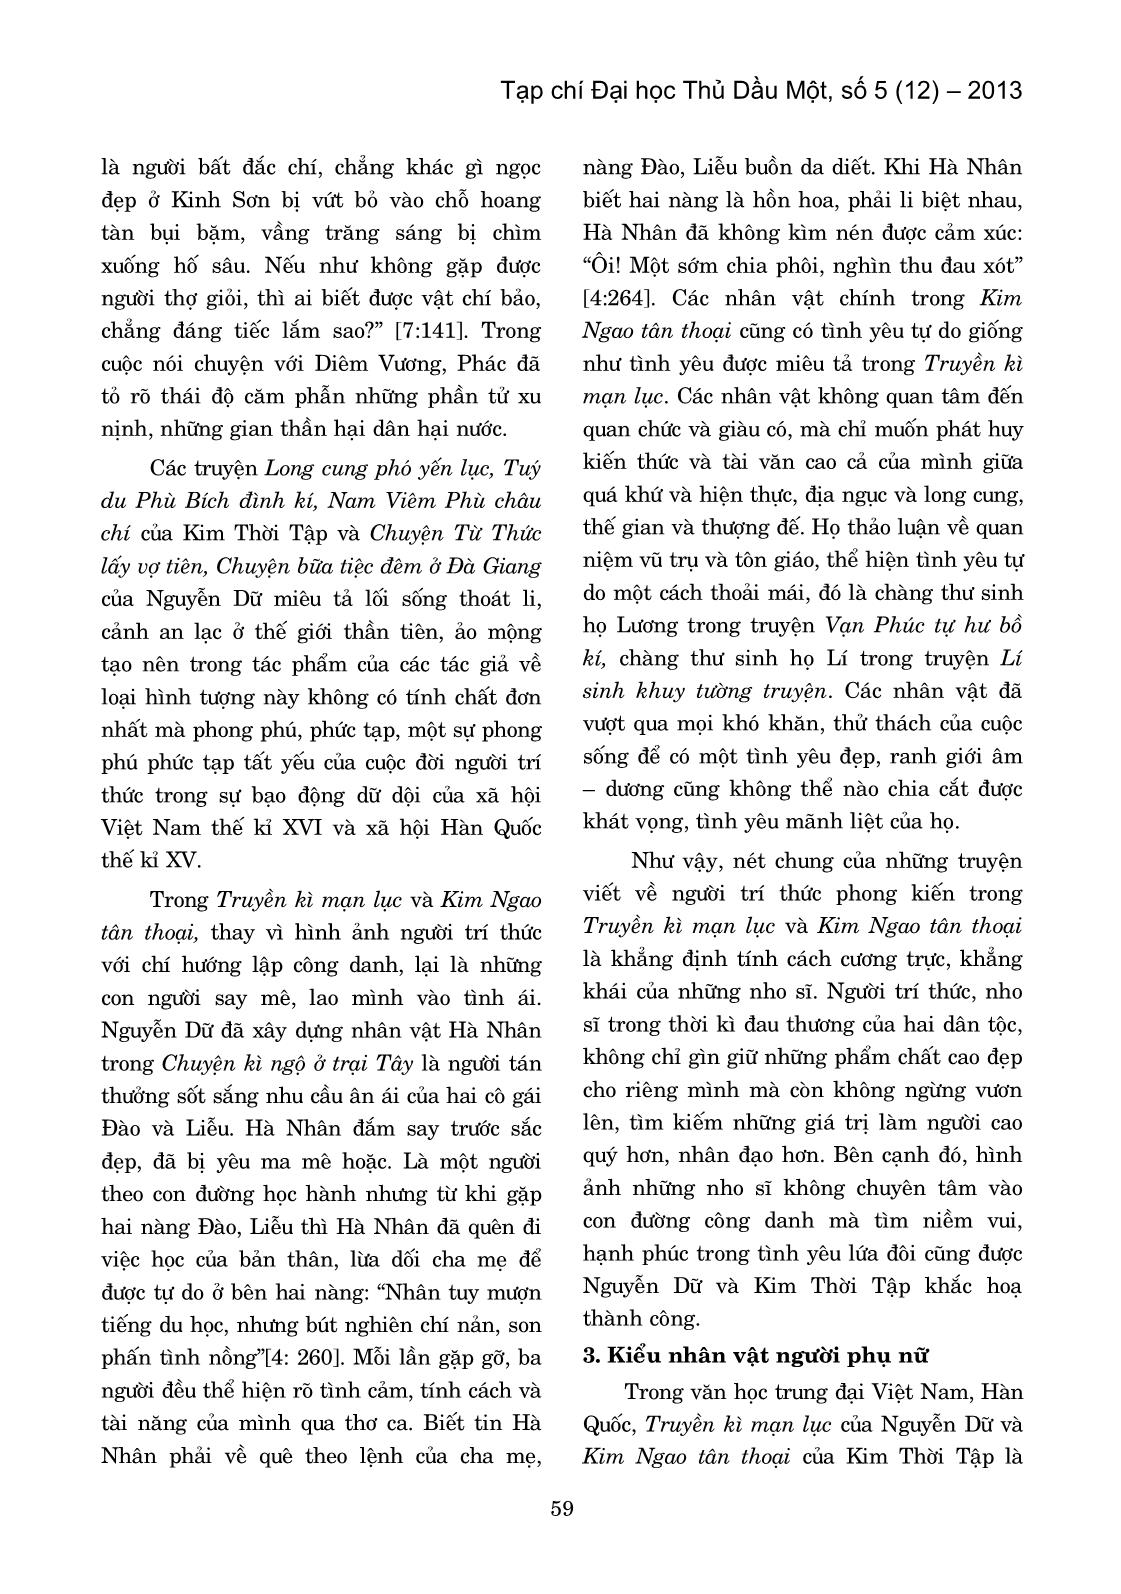 Một số tương đồng về các kiểu nhân vật trong Kim Ngao Tân Thoại (Kim Thời tập) và Truyền Kì Mạn Lục (Nguyễn Dữ) trang 3